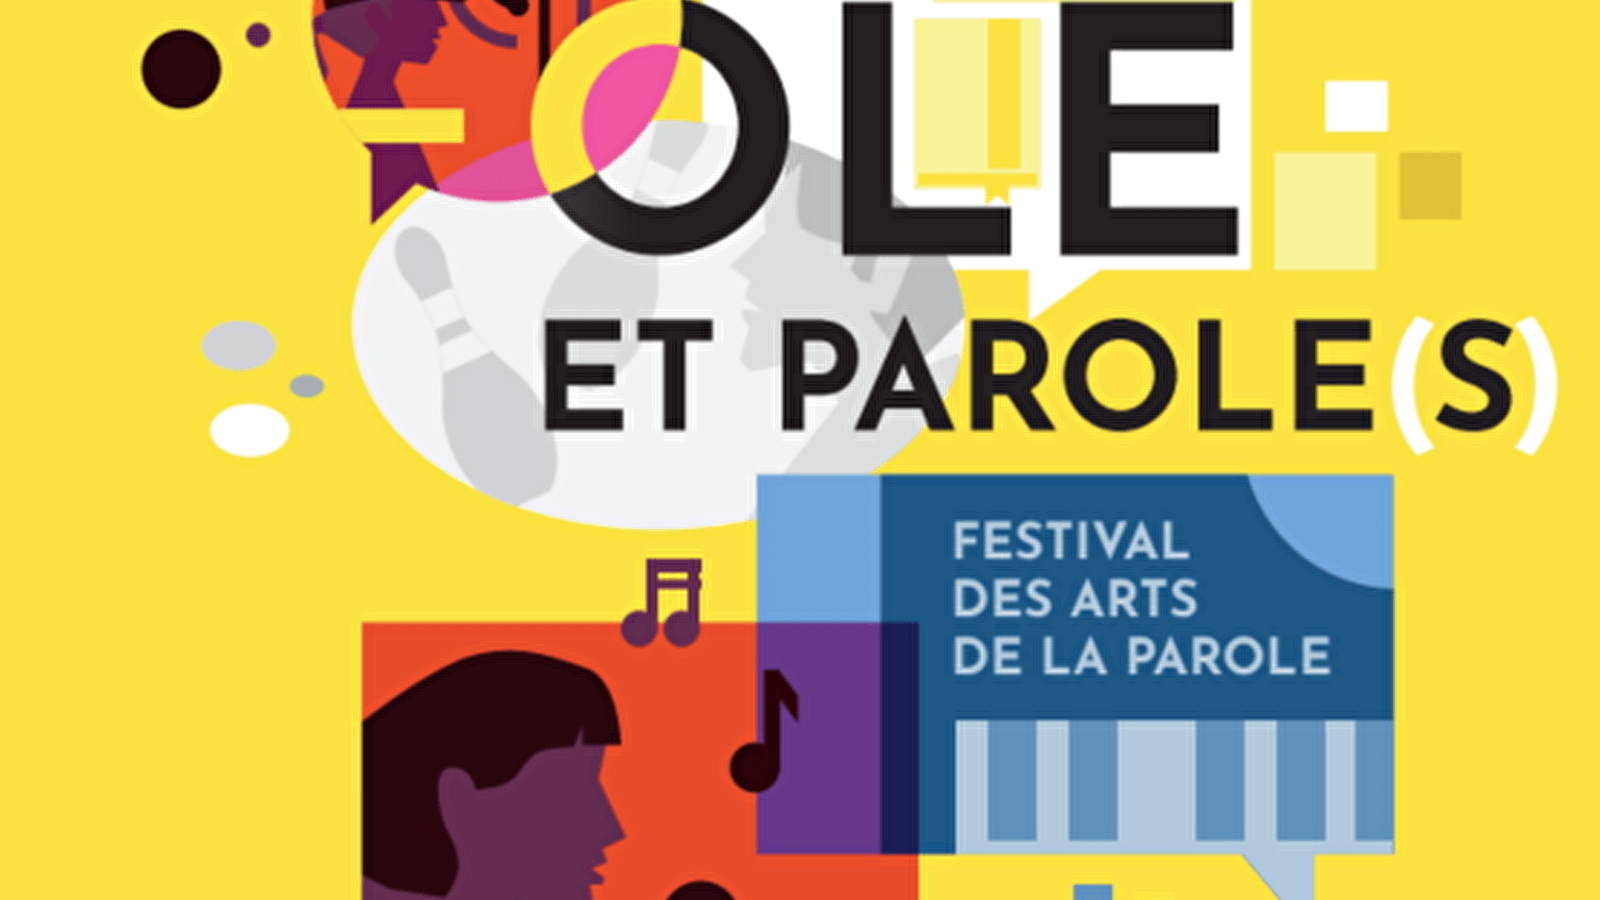 Festival Parole et Parole(s)